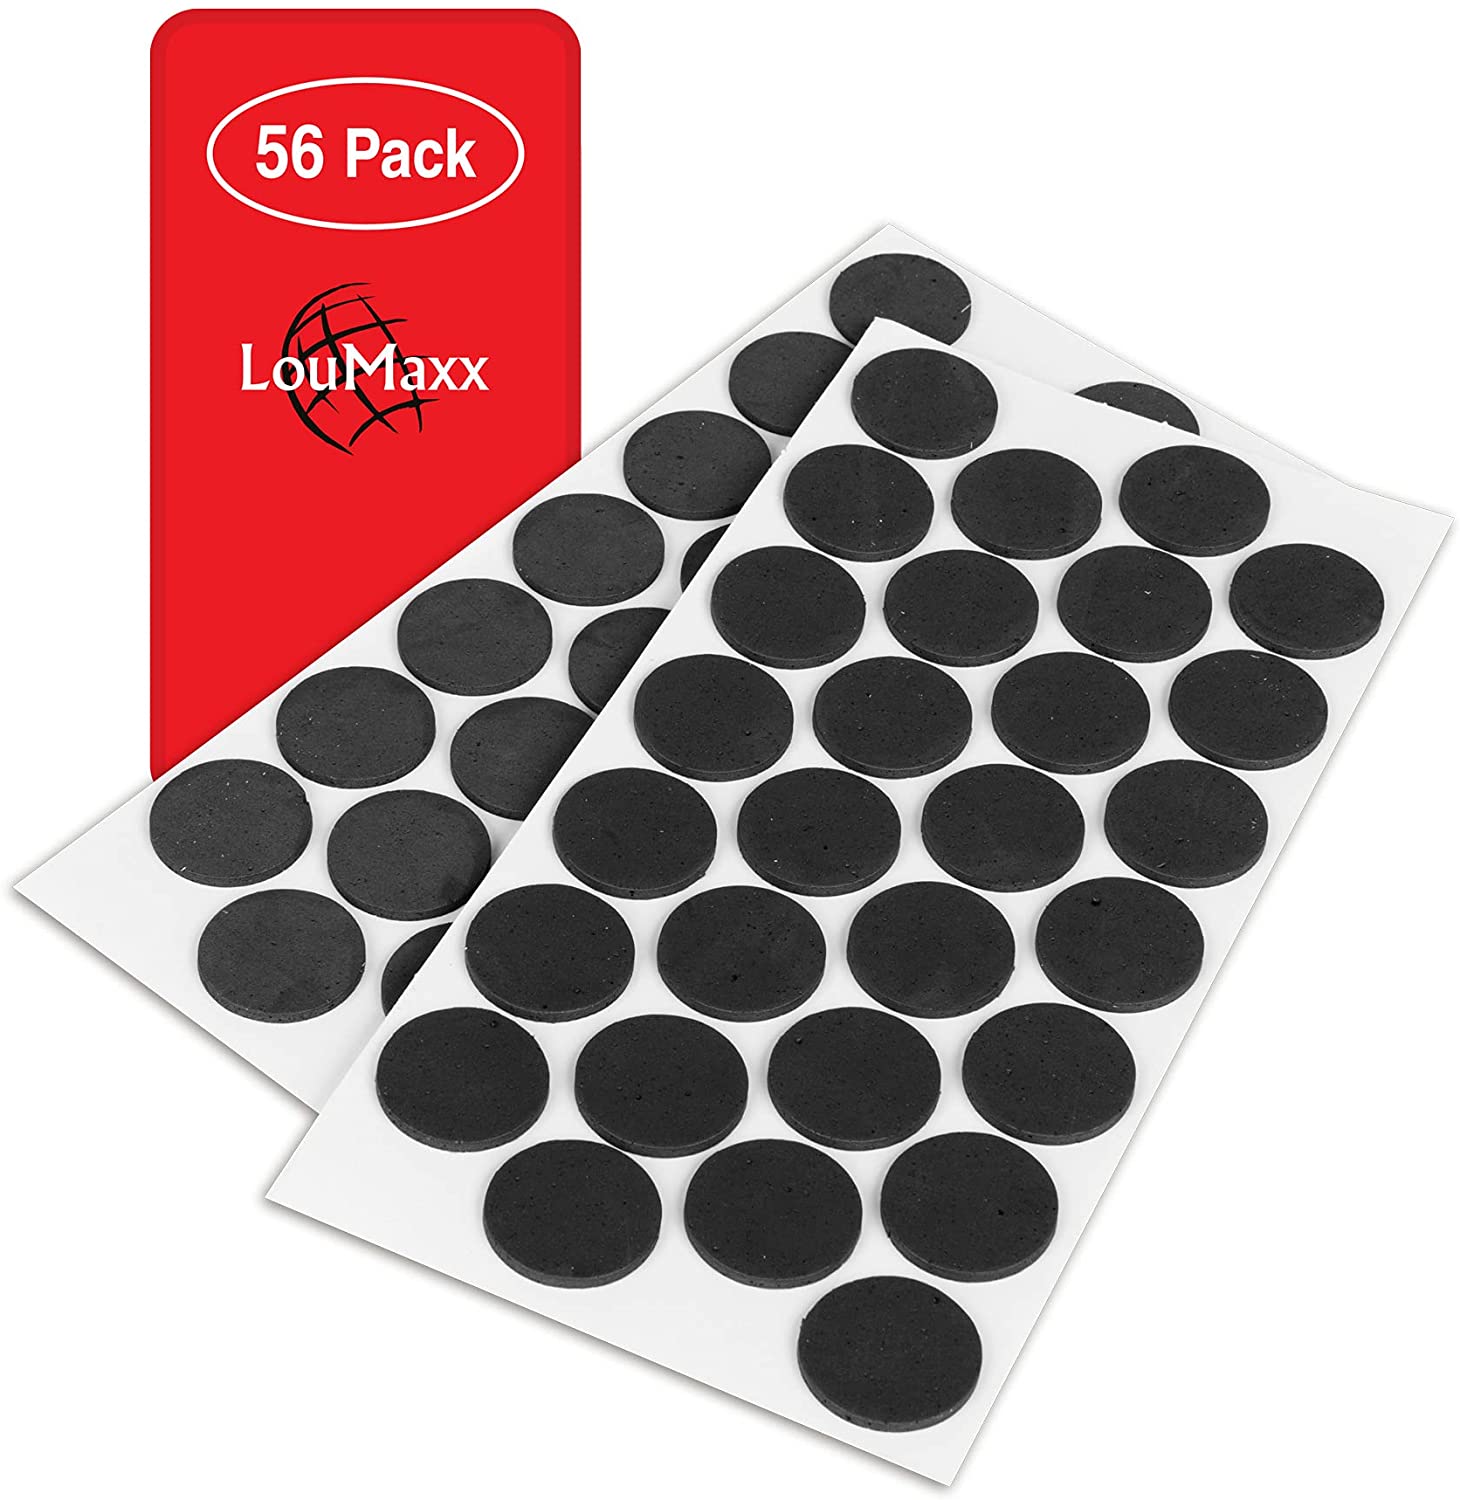 LouMaxx Antirutsch Pads selbstklebend | 56 x Anti Rutsch Möbelstopper schwarz, rund Ø 28 mm | rutschhemmend mit extra starkem Halt